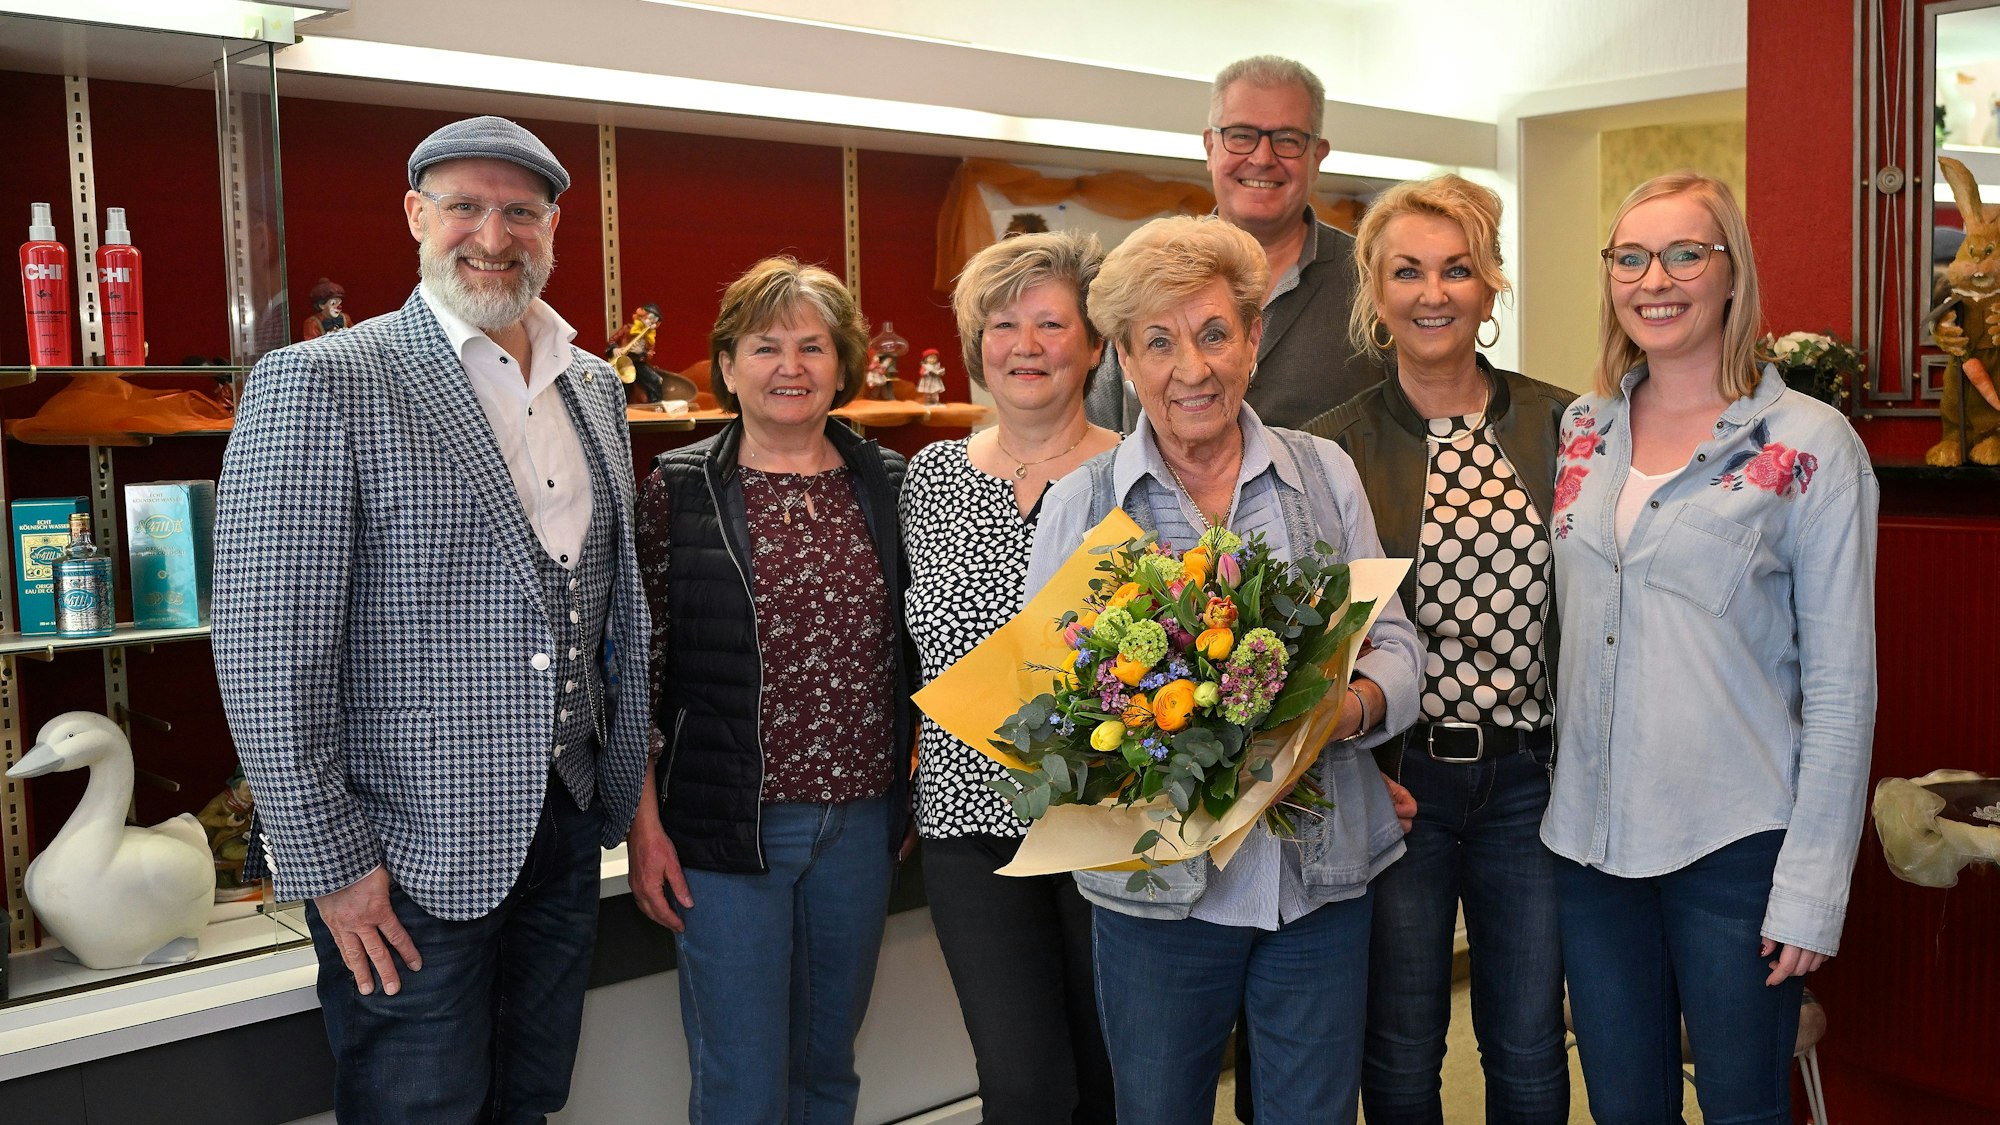 Ingrid Wilms steht mit ihren Mitarbeiterinnen und ihrer Familie im Laden. Sie hält einen Blumenstrauß in den Händen.